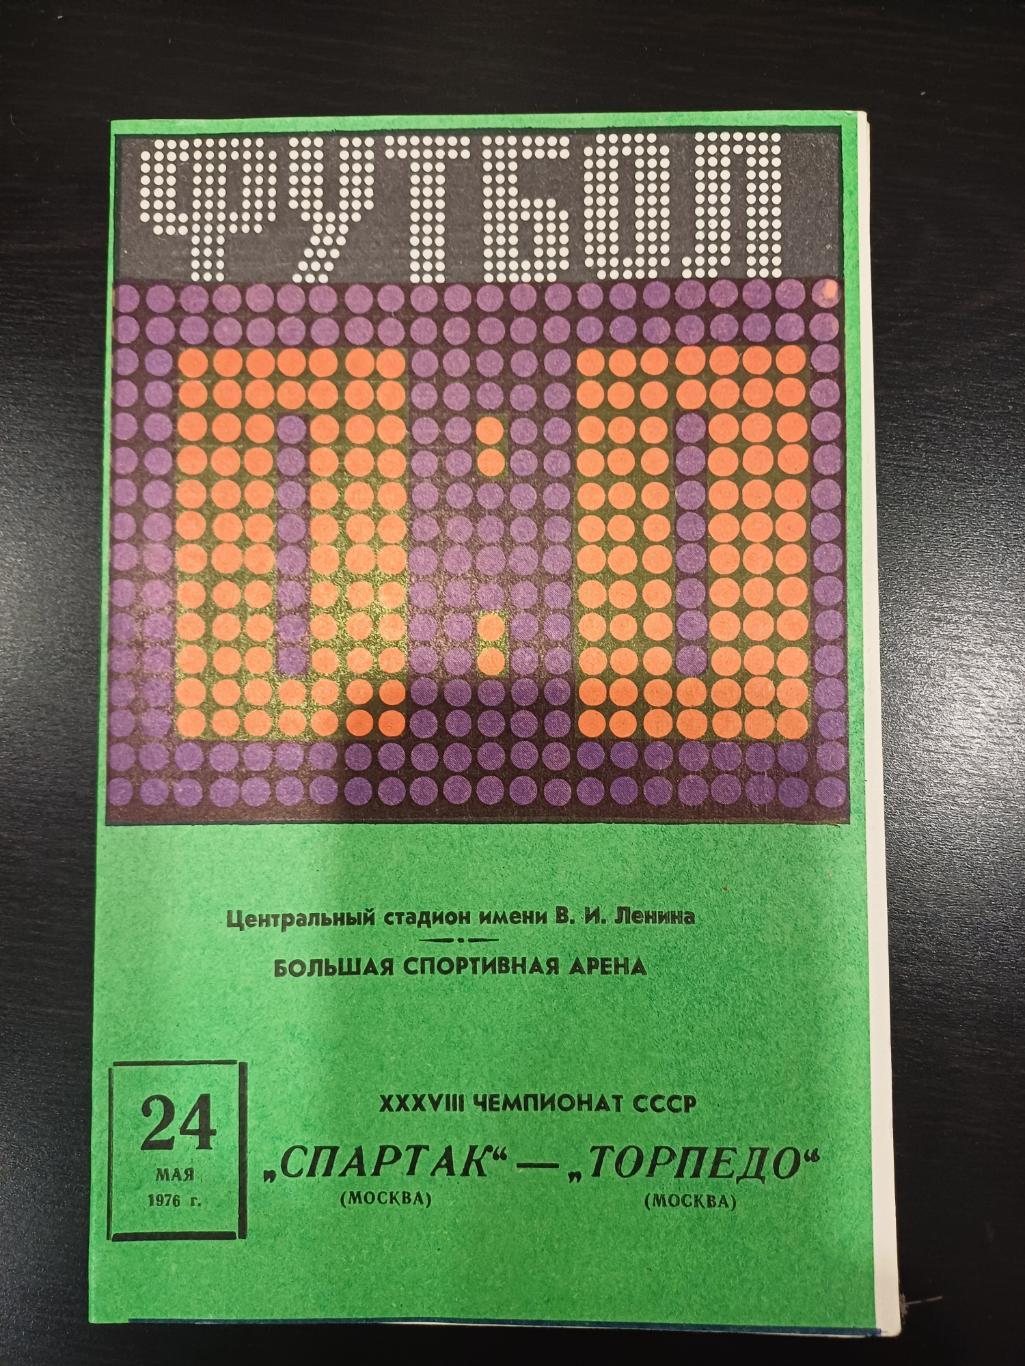 Спартак (Москва) - Торпедо (Москва) 24.05.1976